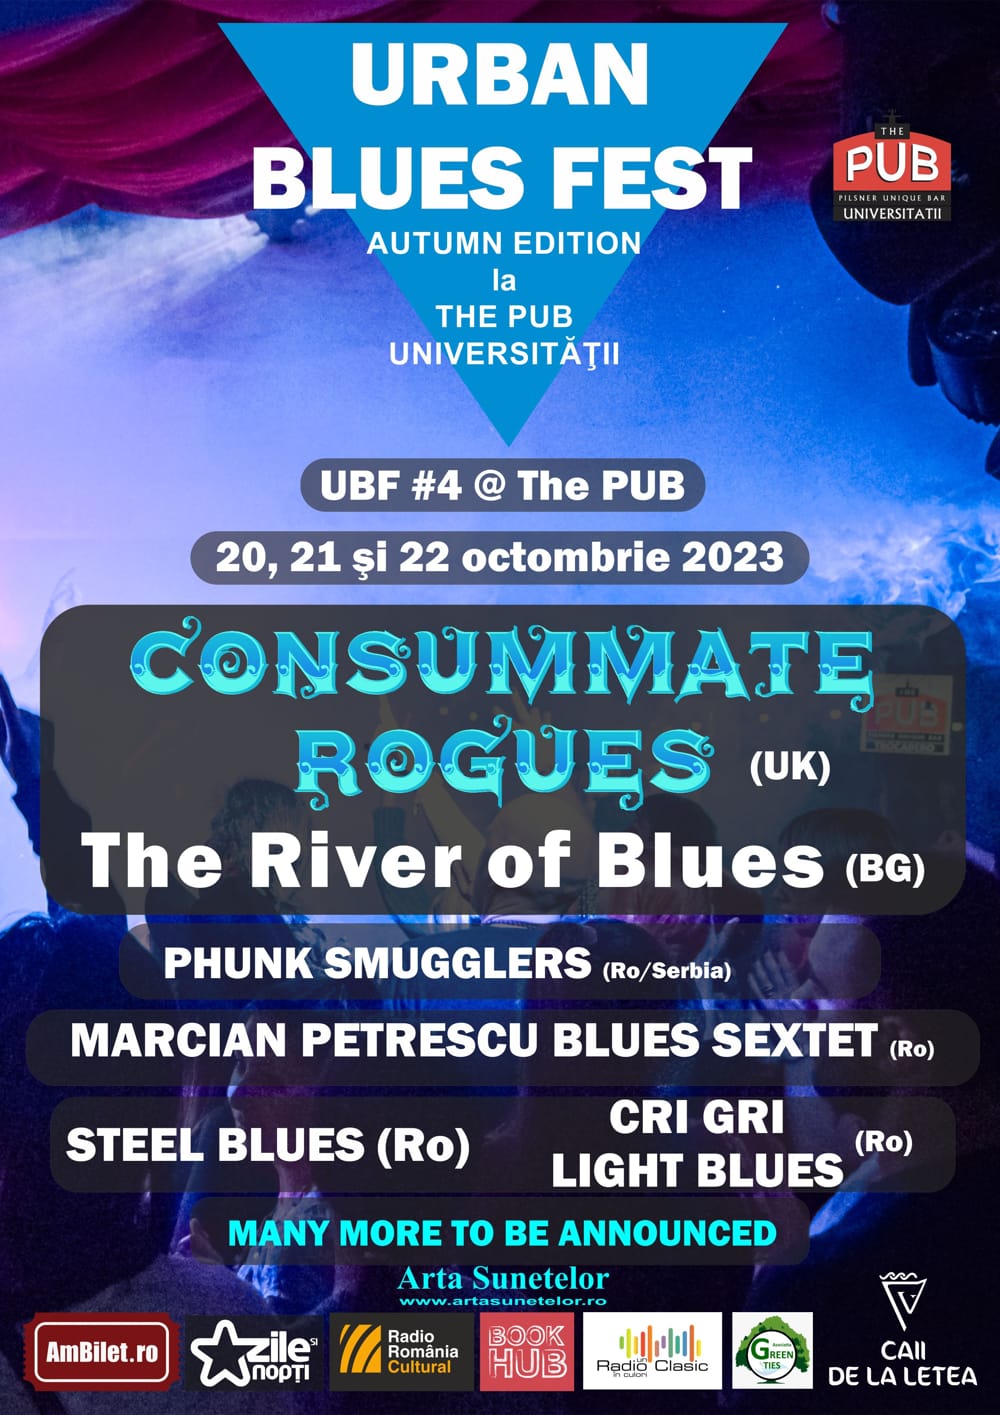 Urban Blues Fest #4 - Autumn Edition anunţă noi nume pe afiş